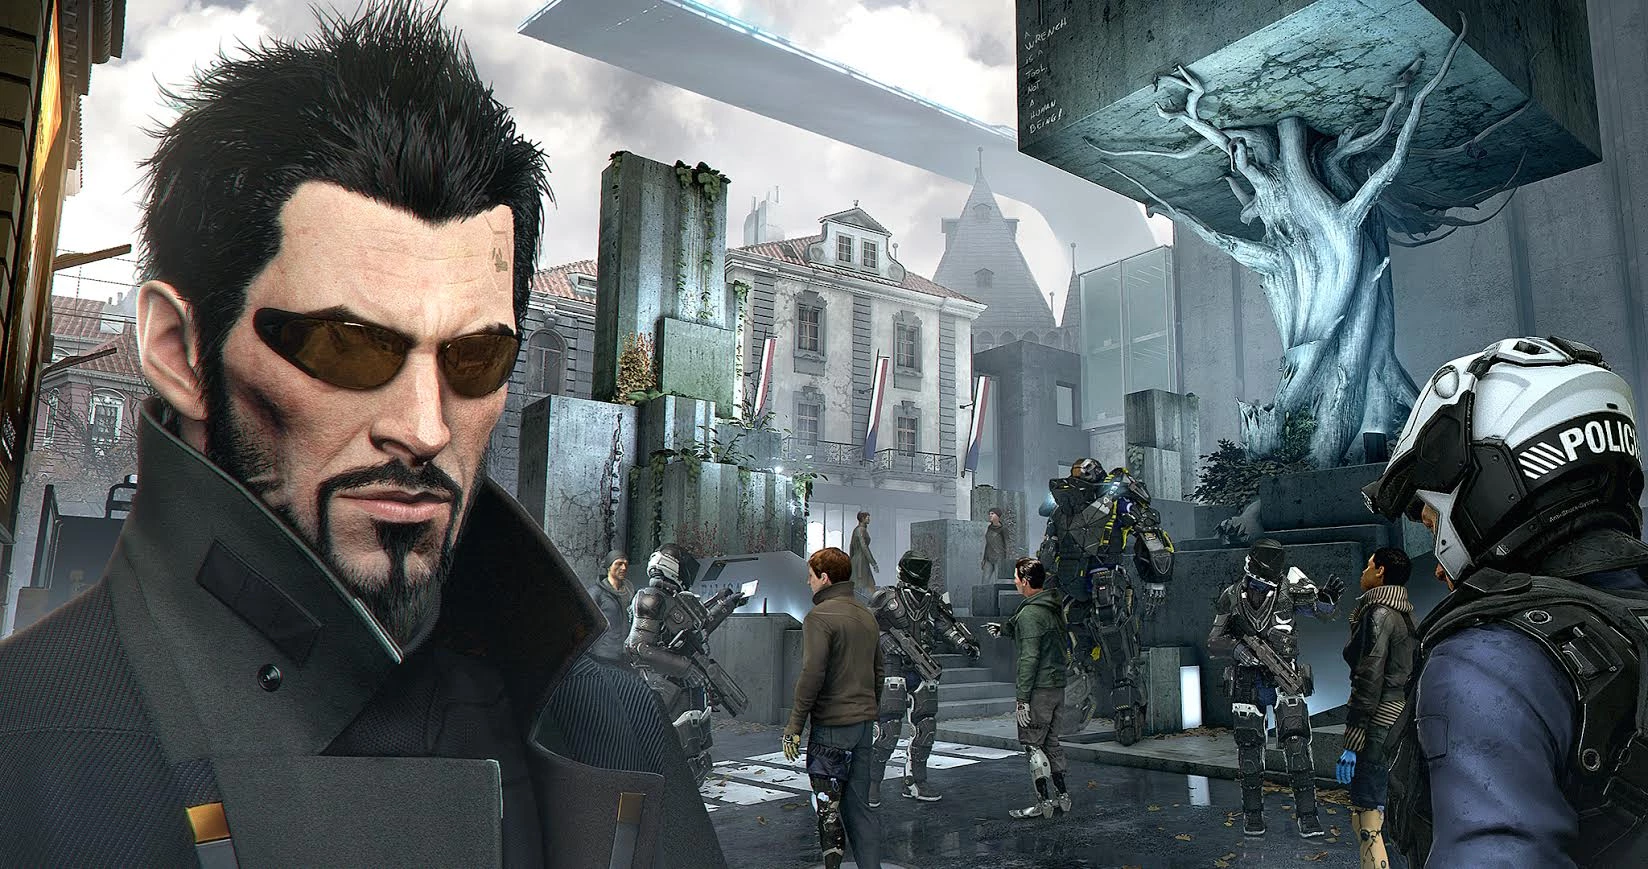 Deus Ex Mankind Divided Day 1 Edition voor de PlayStation 4 kopen op nedgame.nl